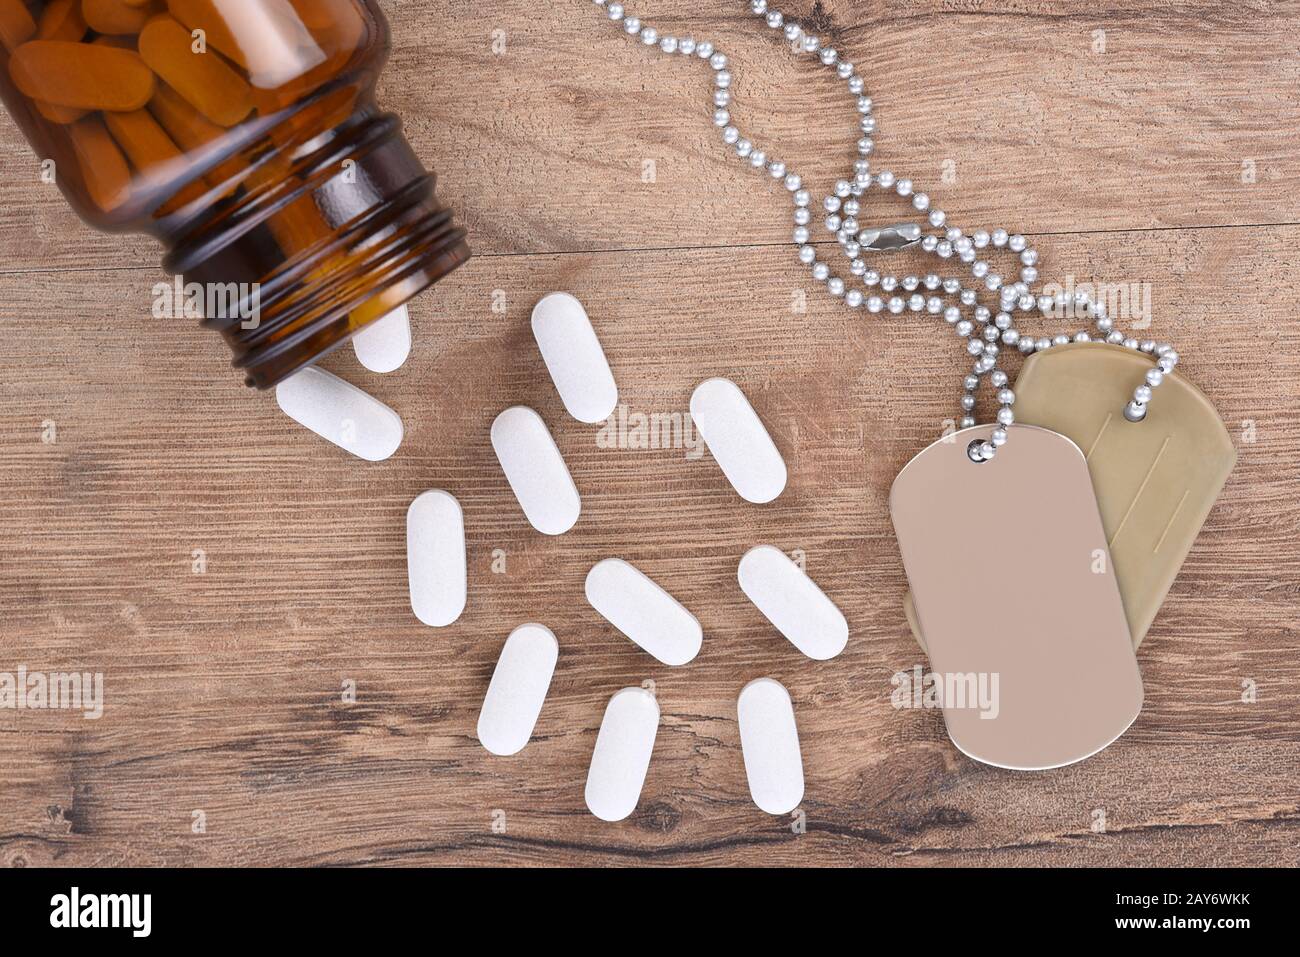 Militär- und Veteranengesundheitskonzept. Hundeetiketten und Pillenflasche mit Tabletts, die auf den Holztischhintergrund verschüttet werden. Stockfoto